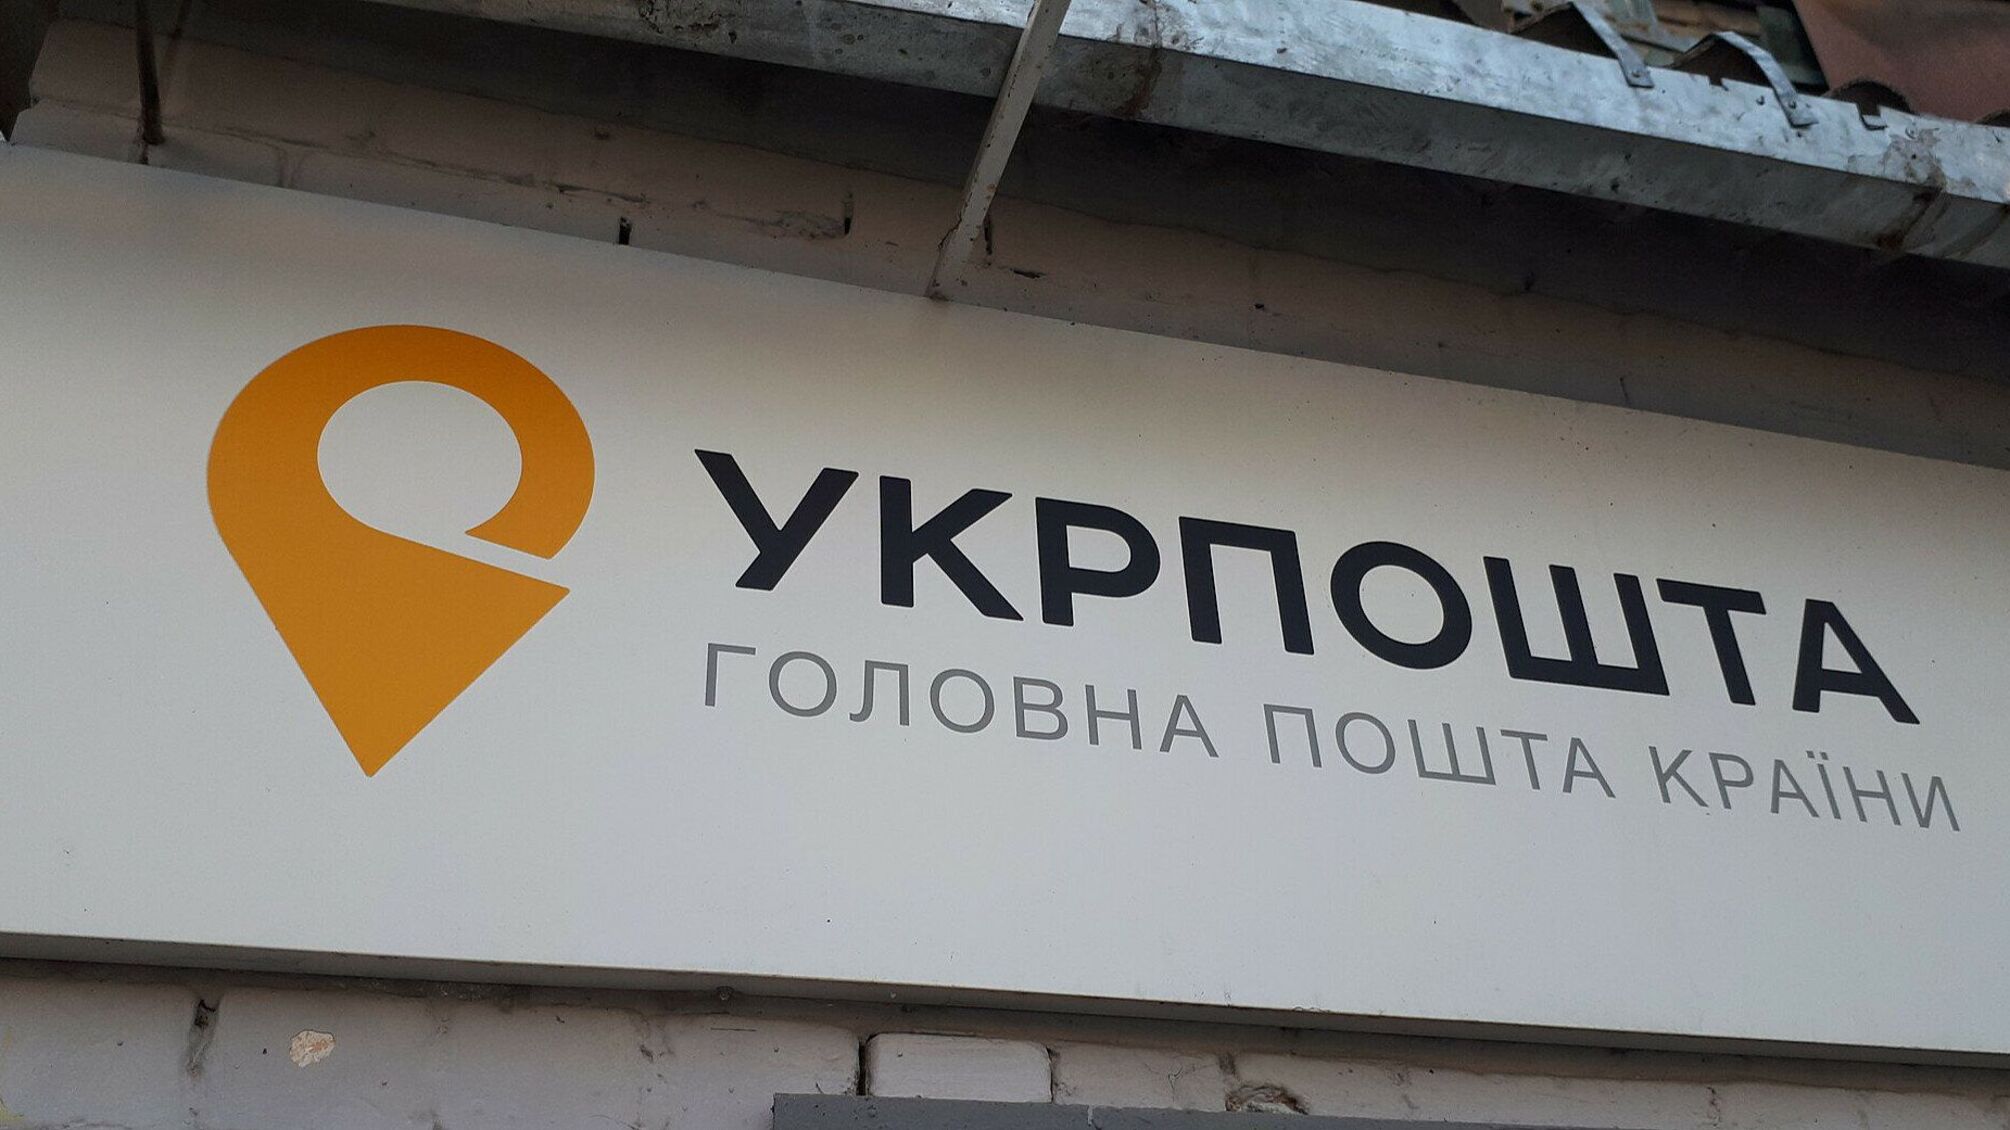 Смілянський: 'Укрпошта' намагається повернути 3 млн грн, які викрали окупаційні війська у Мелітополі